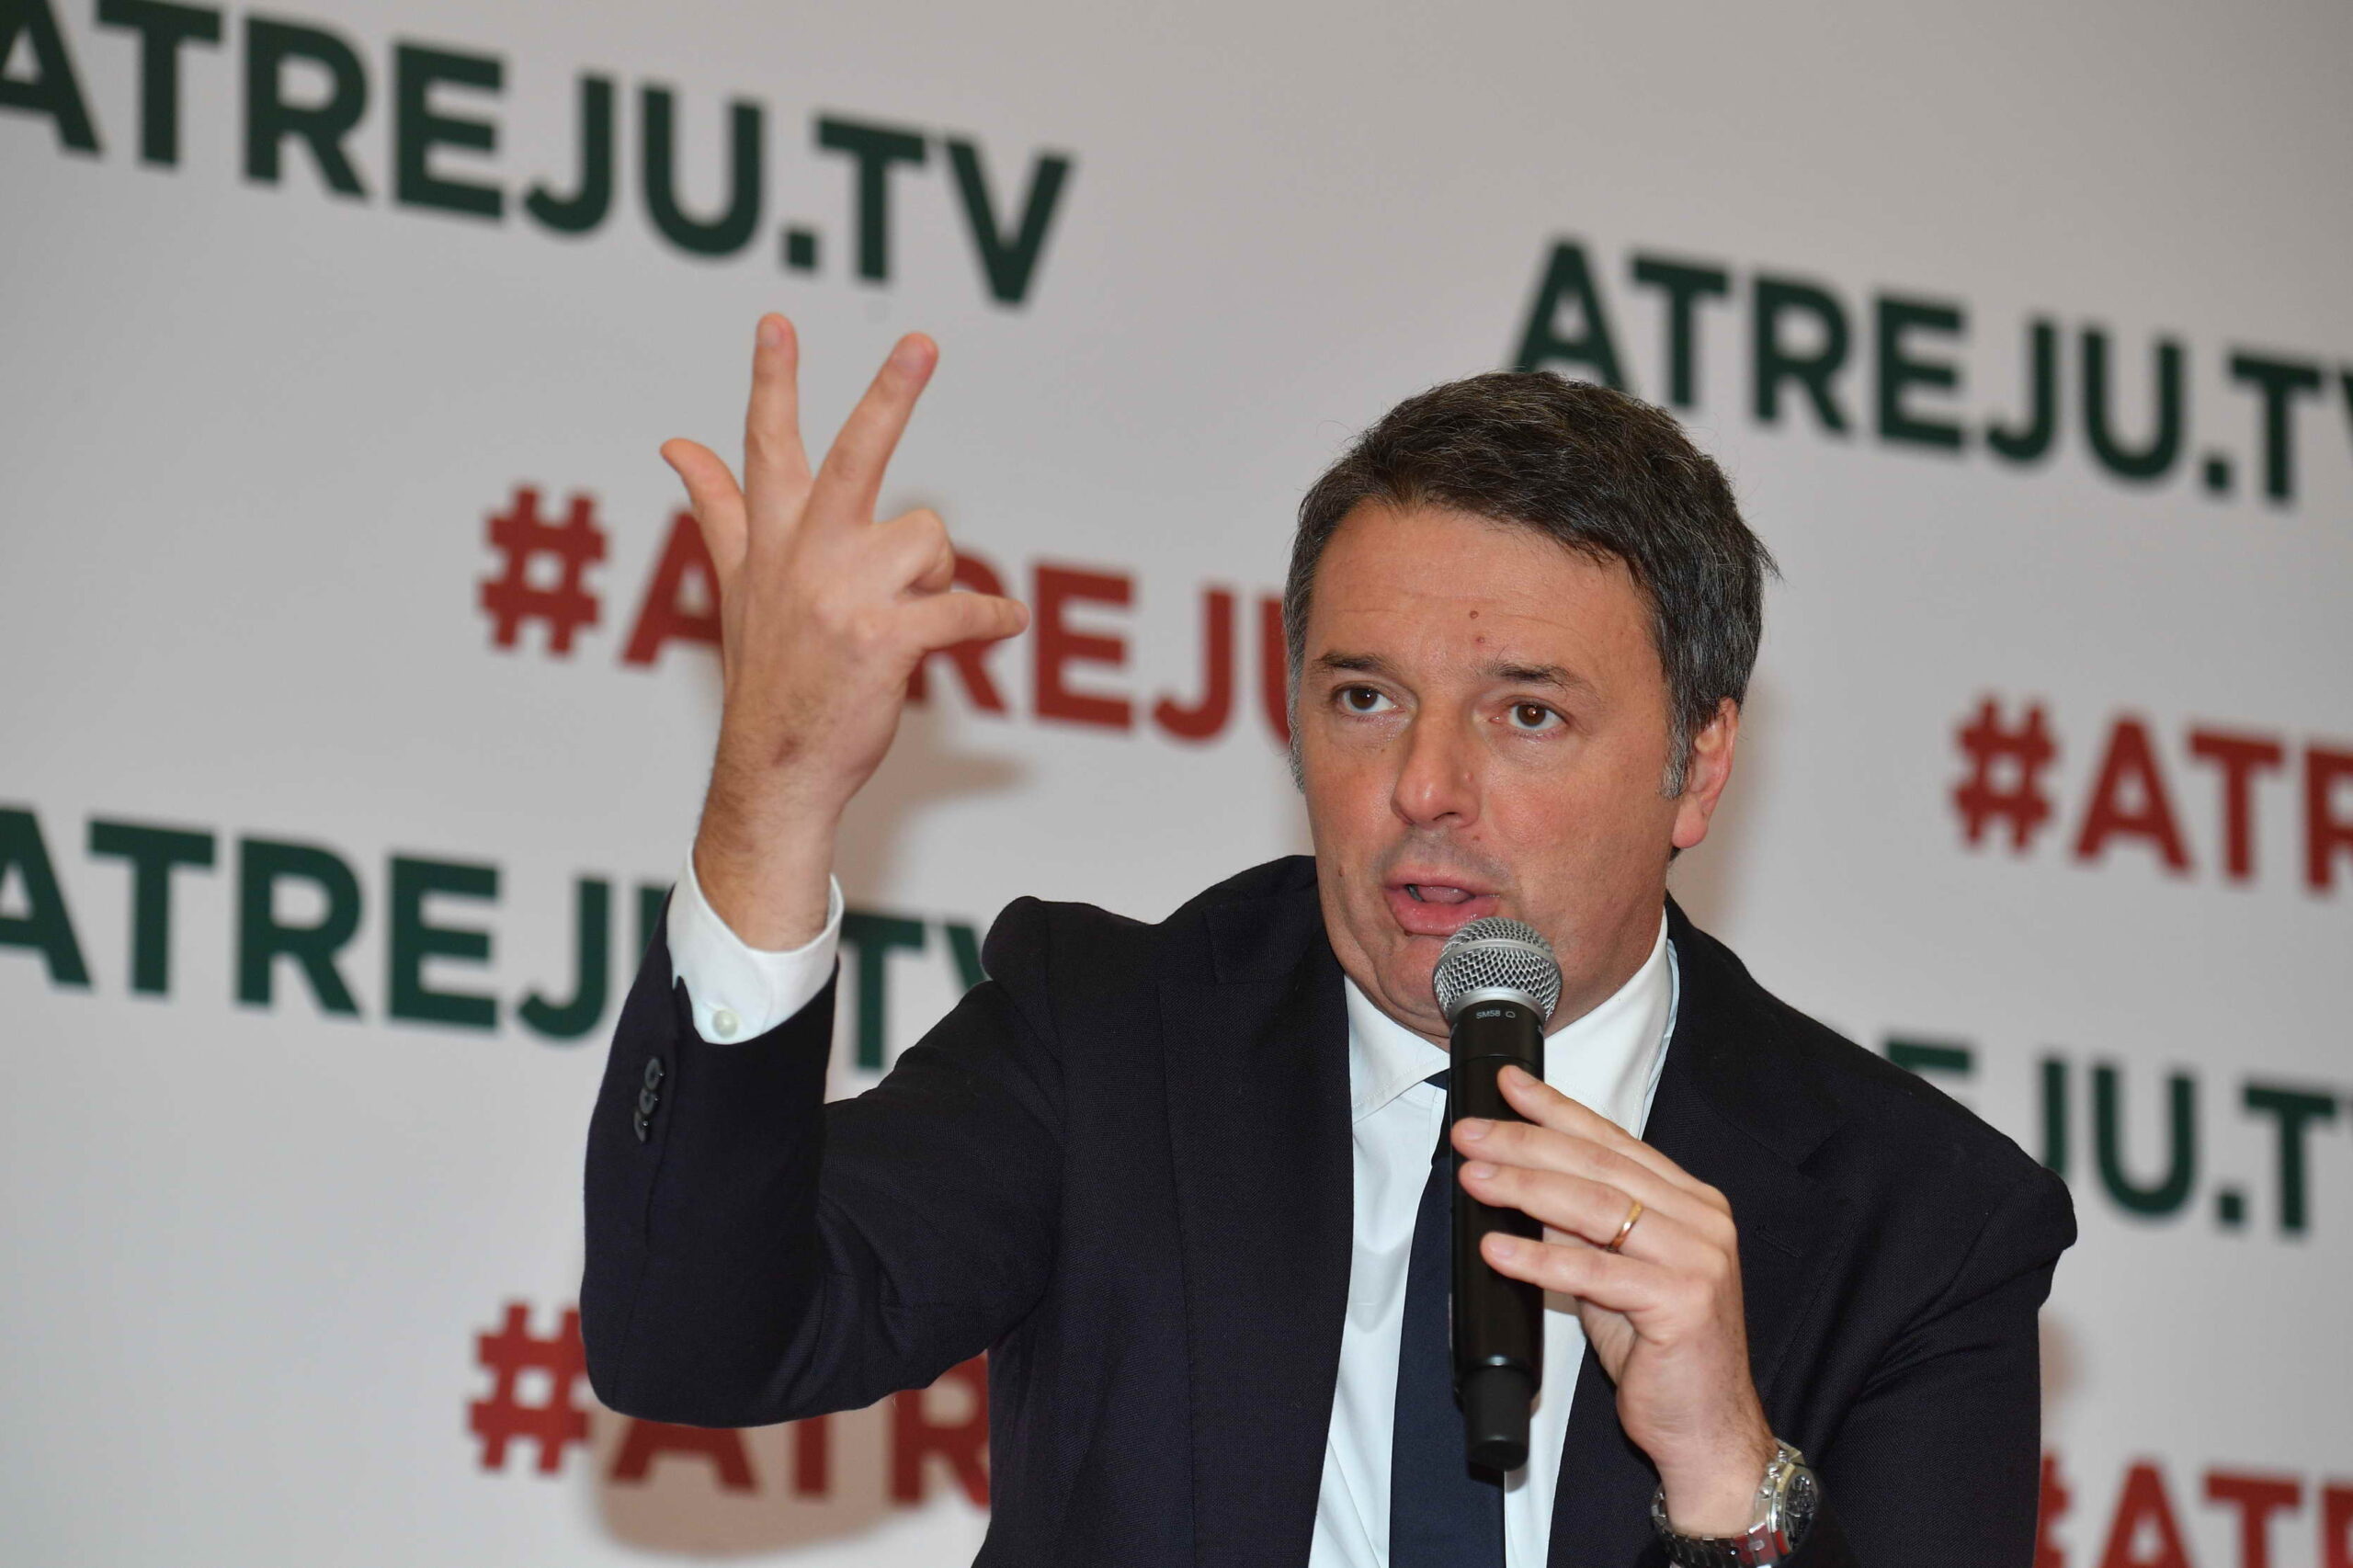 Renzi ribadisce il no a Conte e profetizza la fine del governo: "Meloni e Salvini romperanno come i Ferragnez"